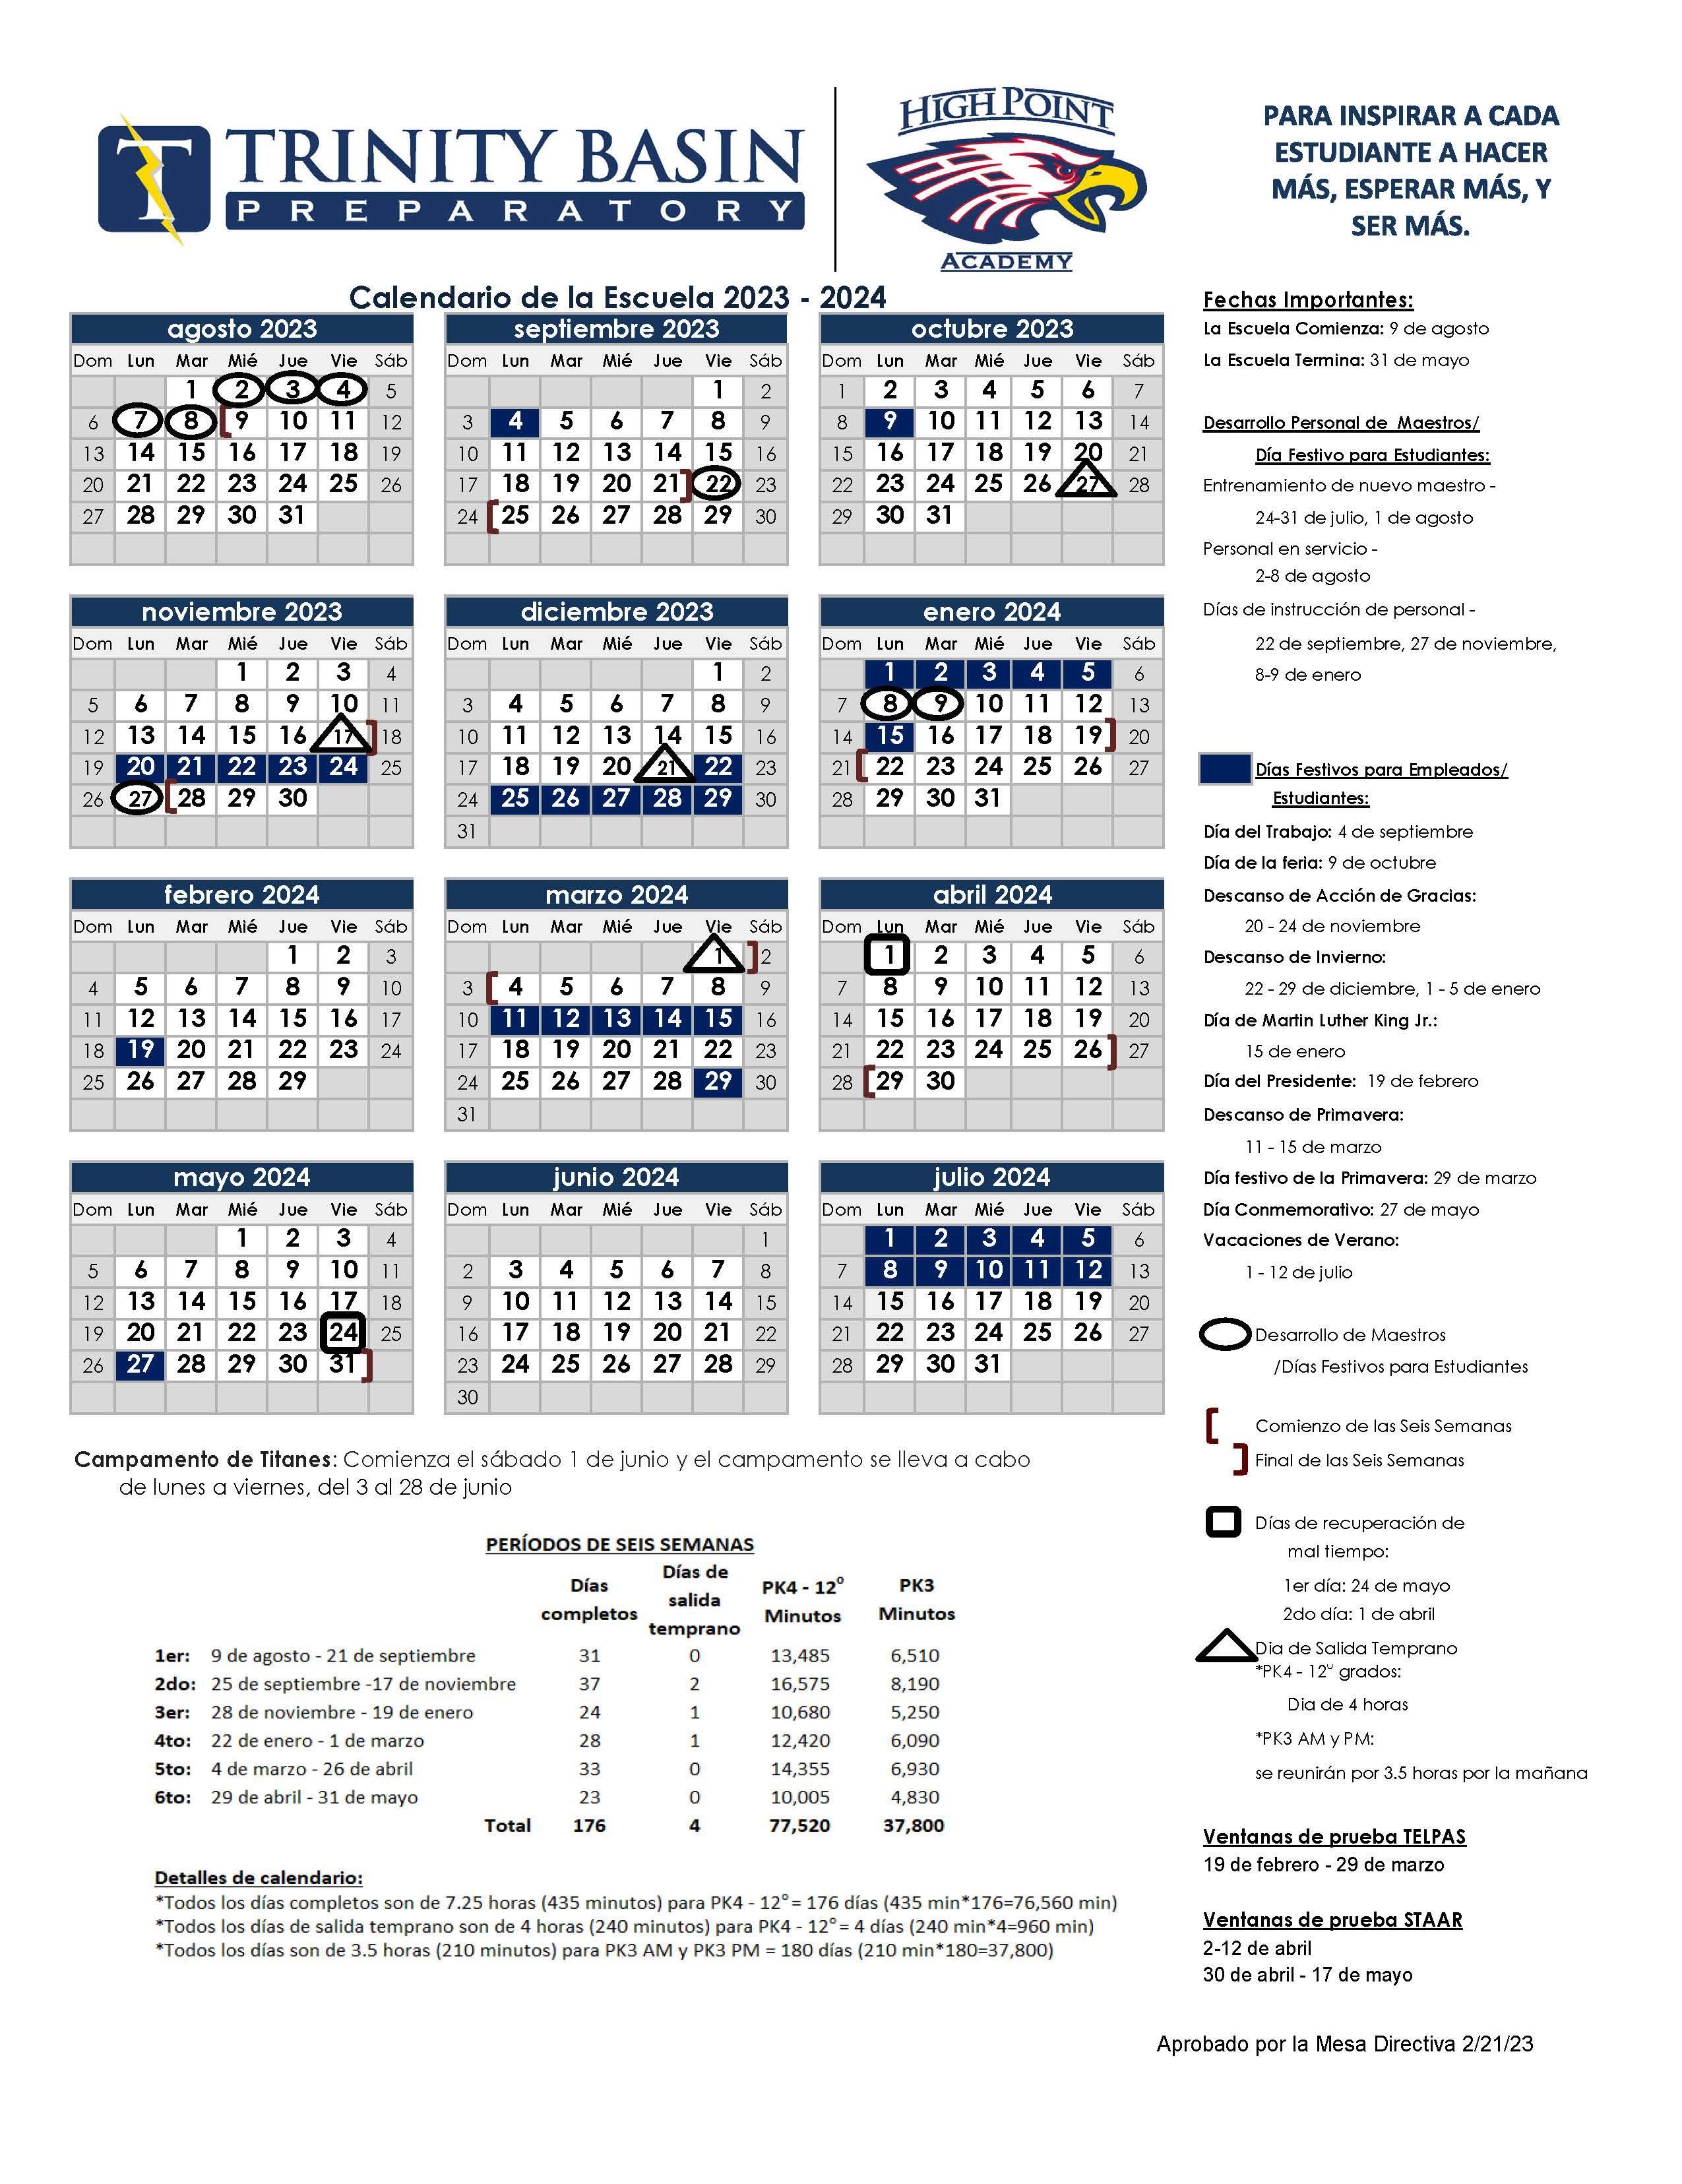 2023-2024 Trinity Basin Preparatory and High Point Academy Academic Calendar in Spanish